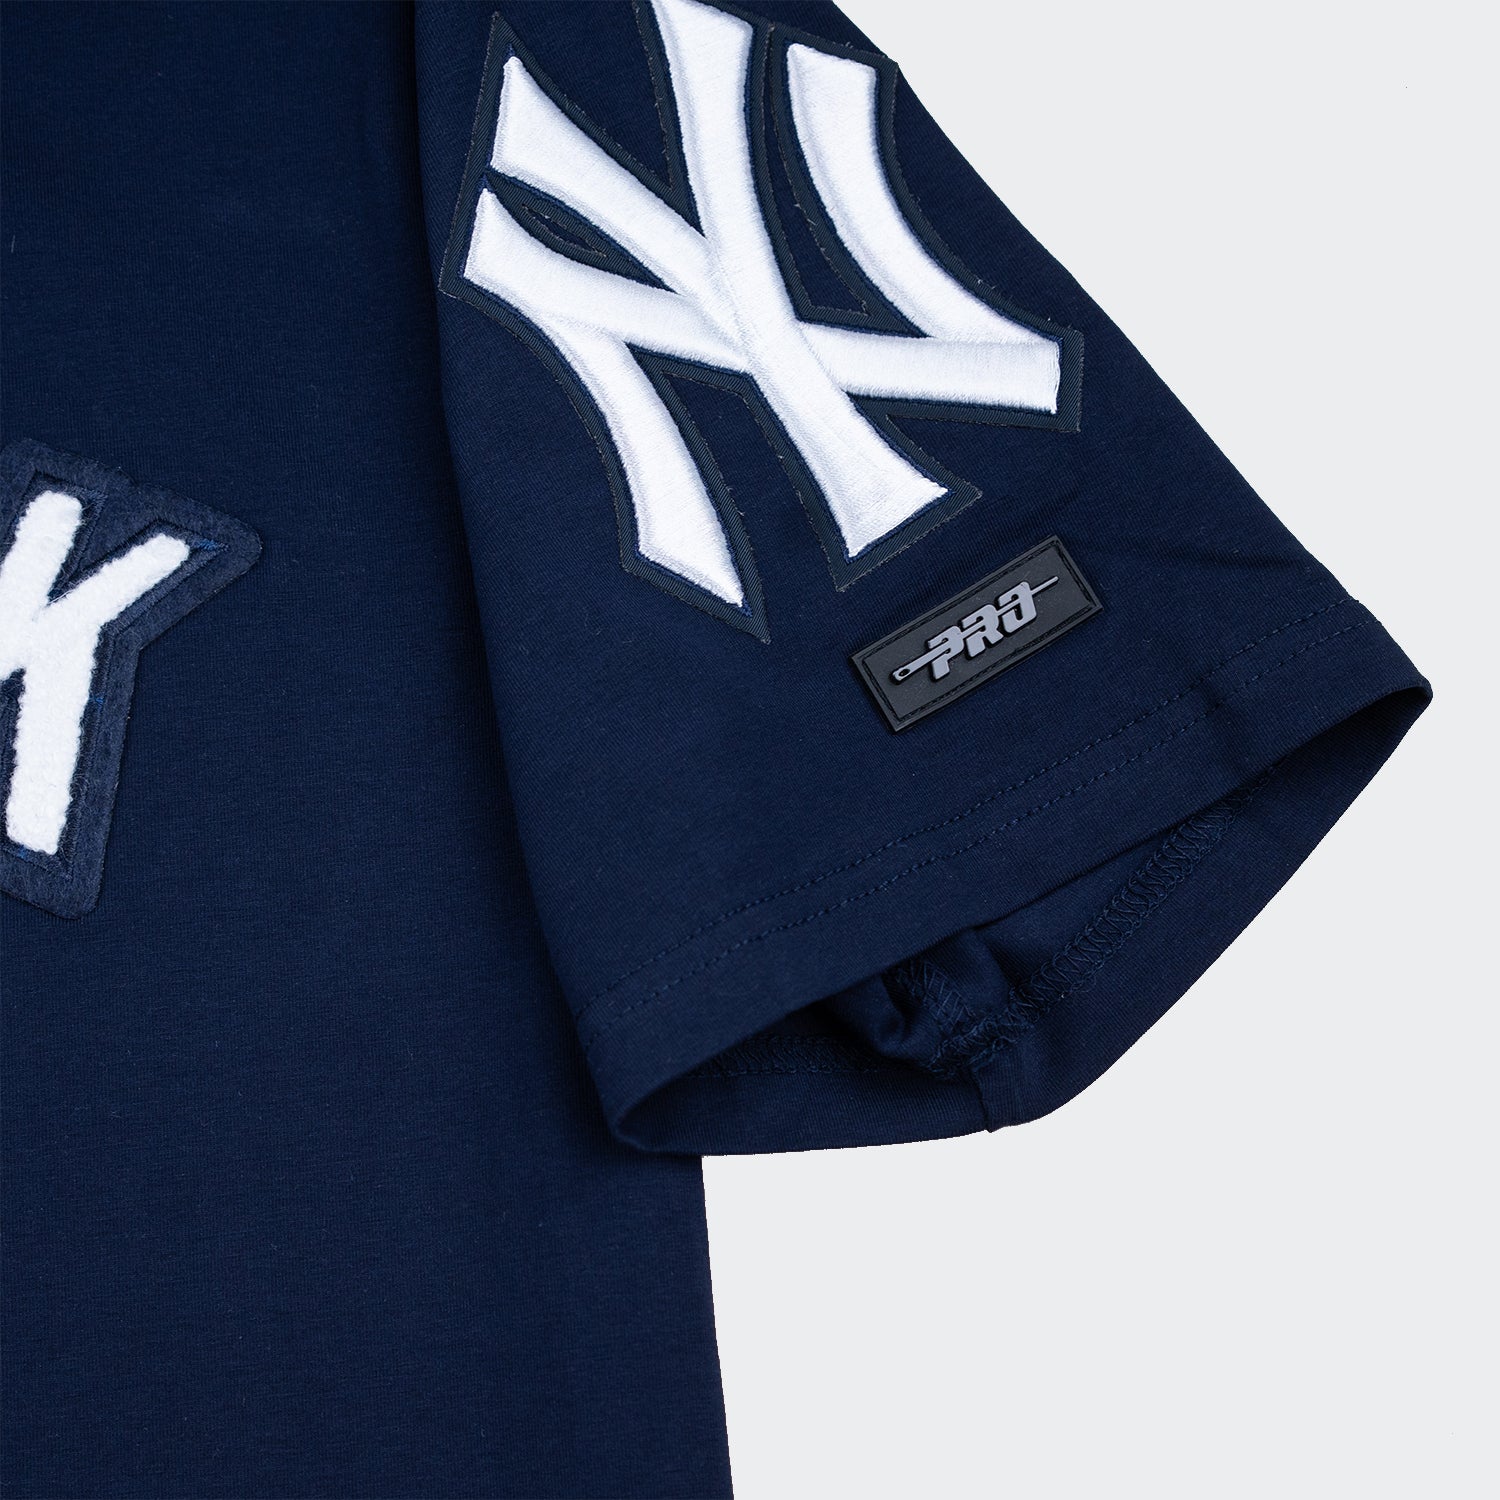 New-York-Yankees-men-tee